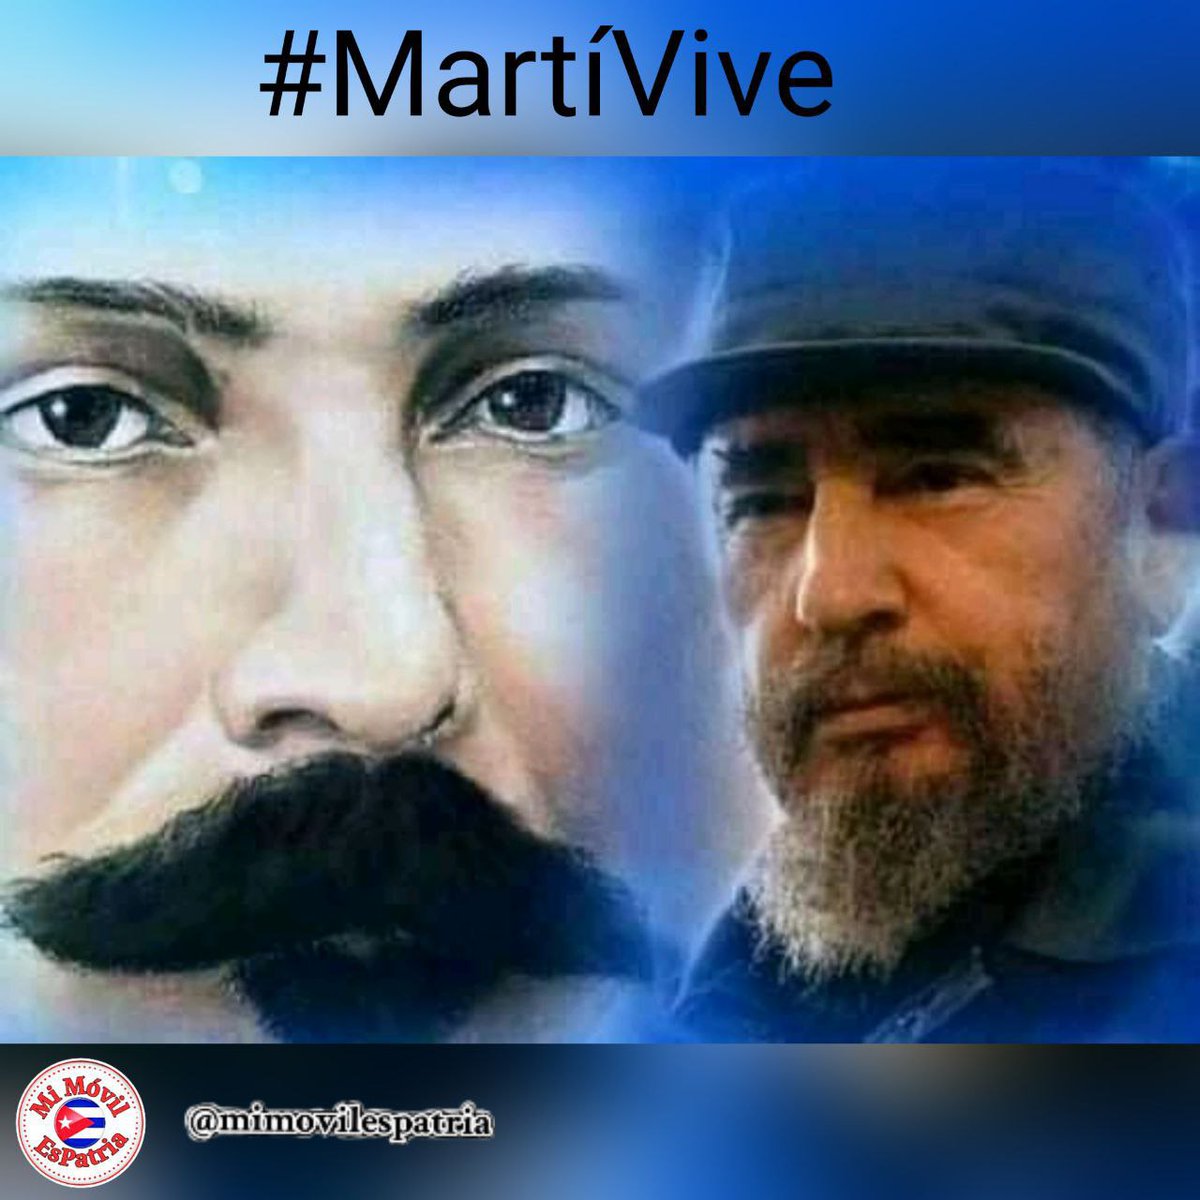 Honremos al apóstol porque #MartíVive y vivirá por siempre en nosotros.
#MiMóvilEsPatria